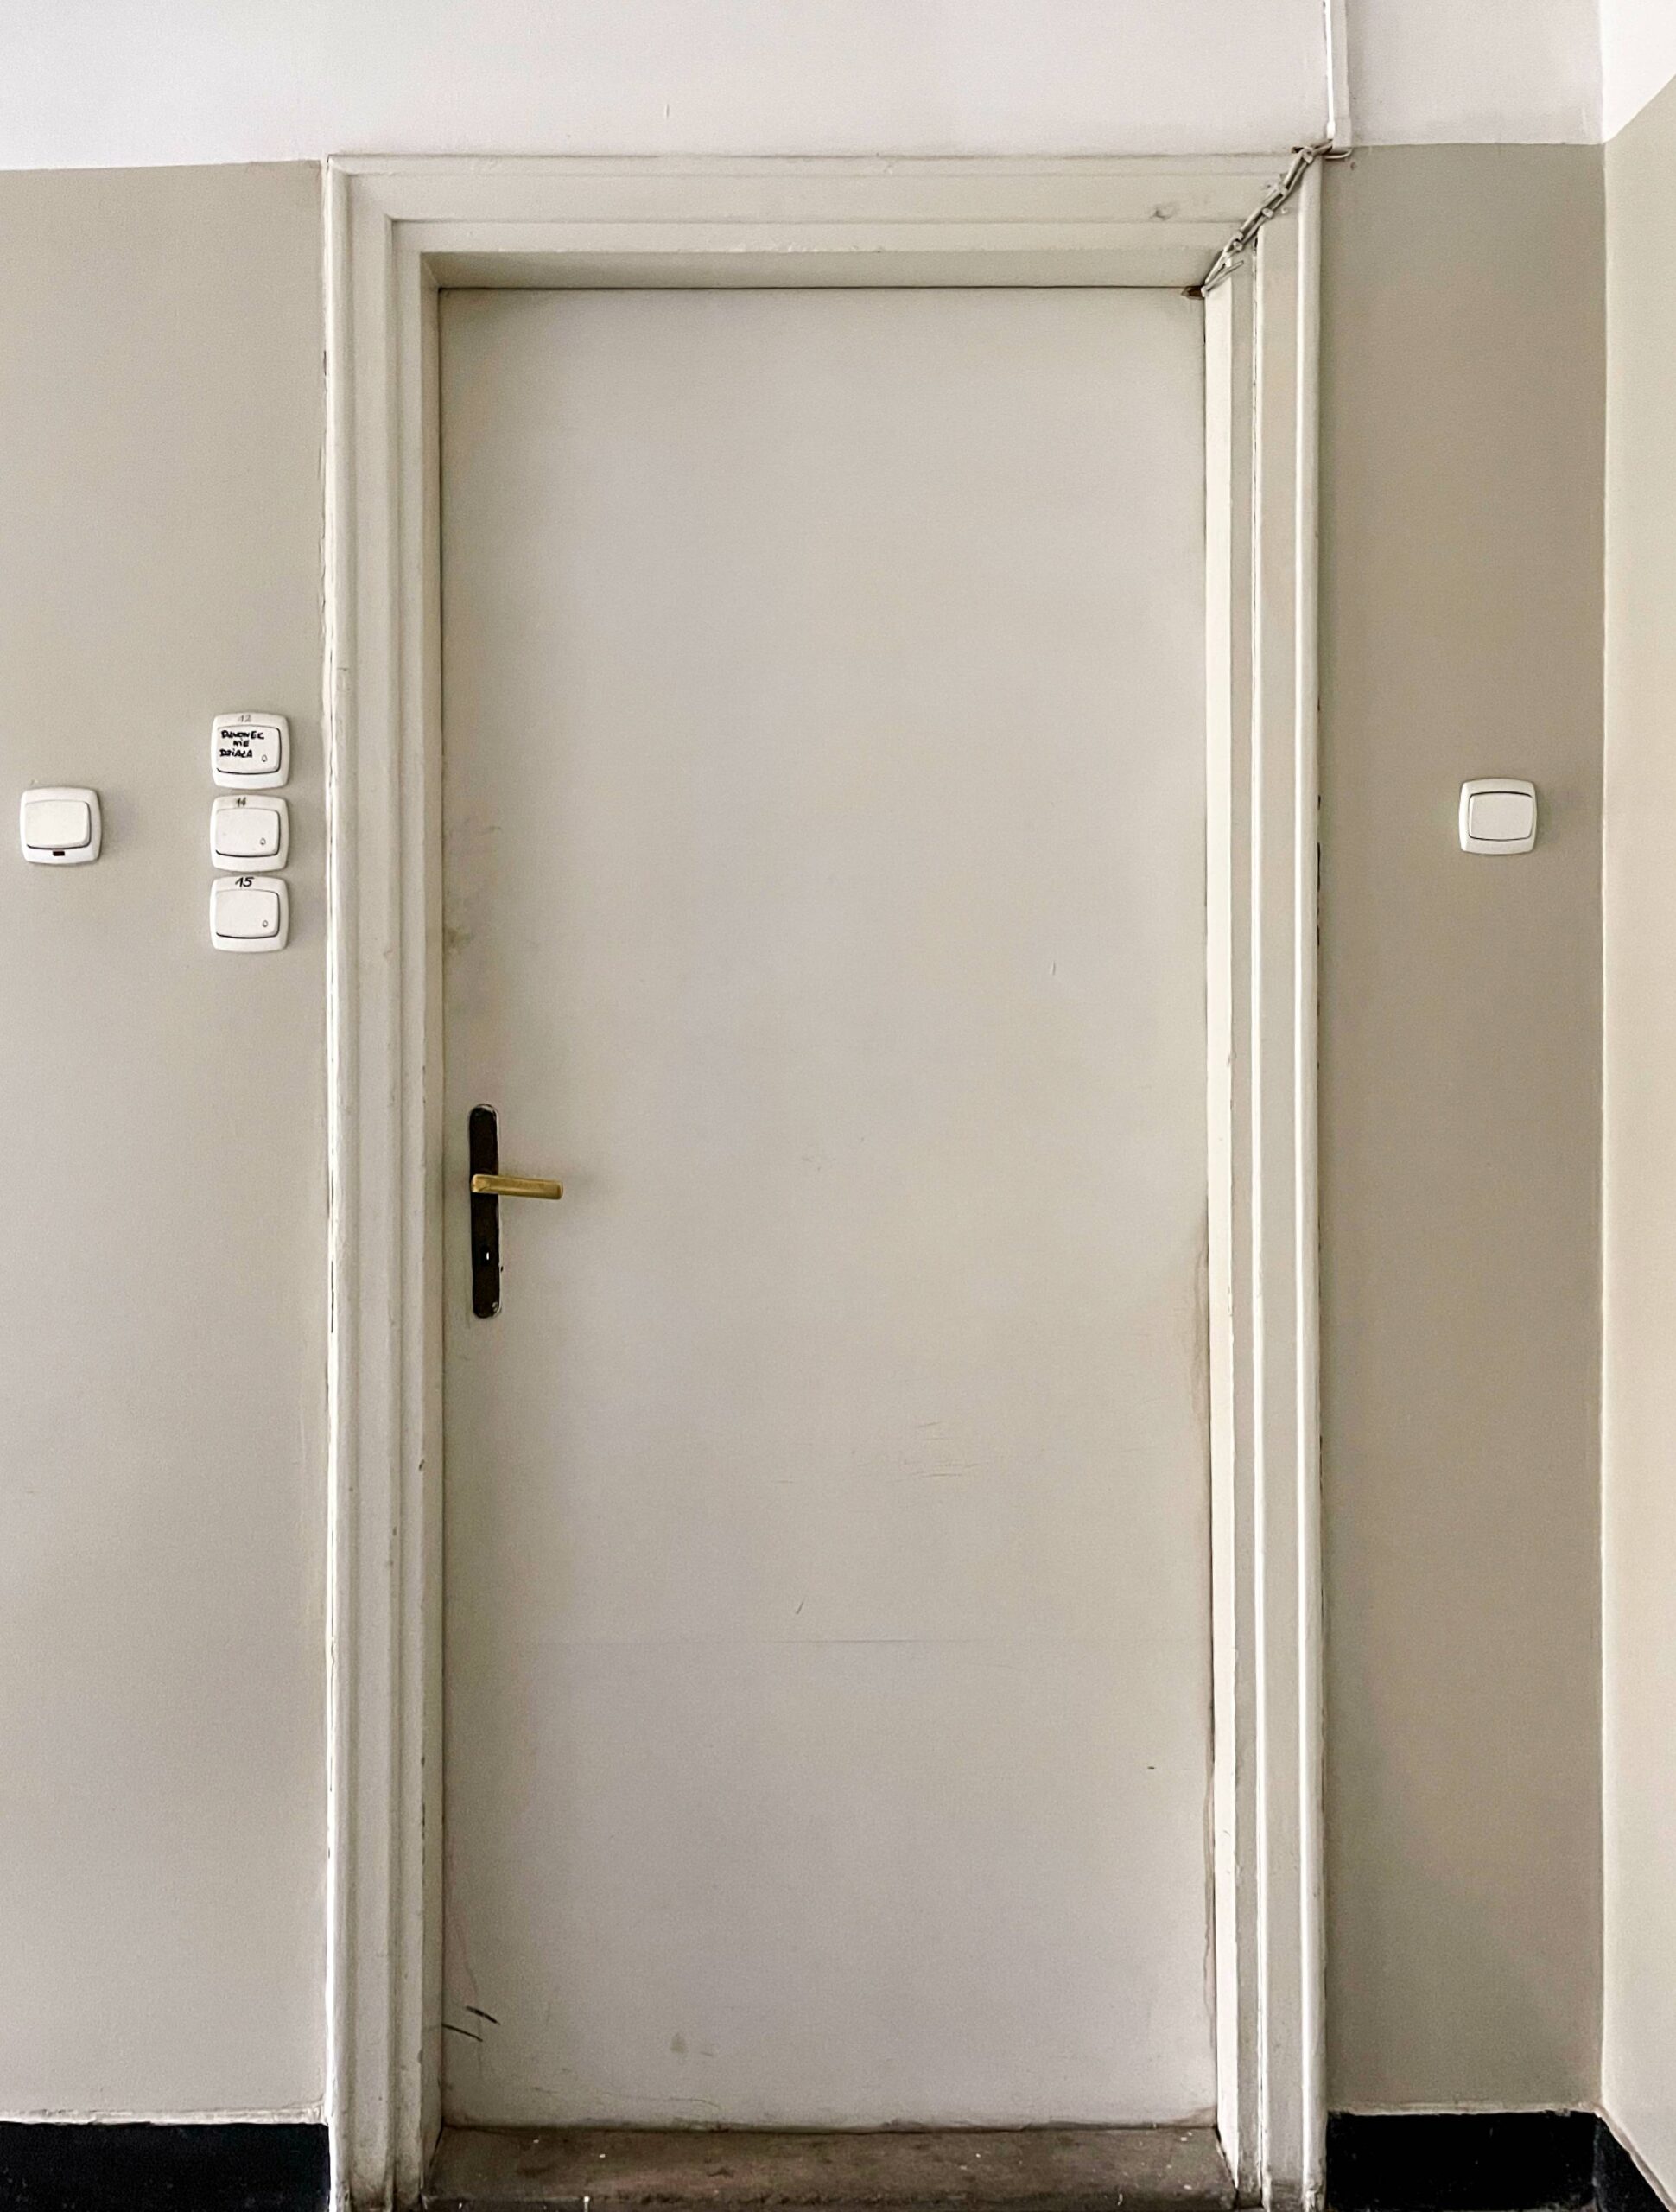 Klatka wschodnia. Drzwi do mieszkania. Piętro IV. Fot. Mariusz Majewski 2022 r., źródło: AOD III.